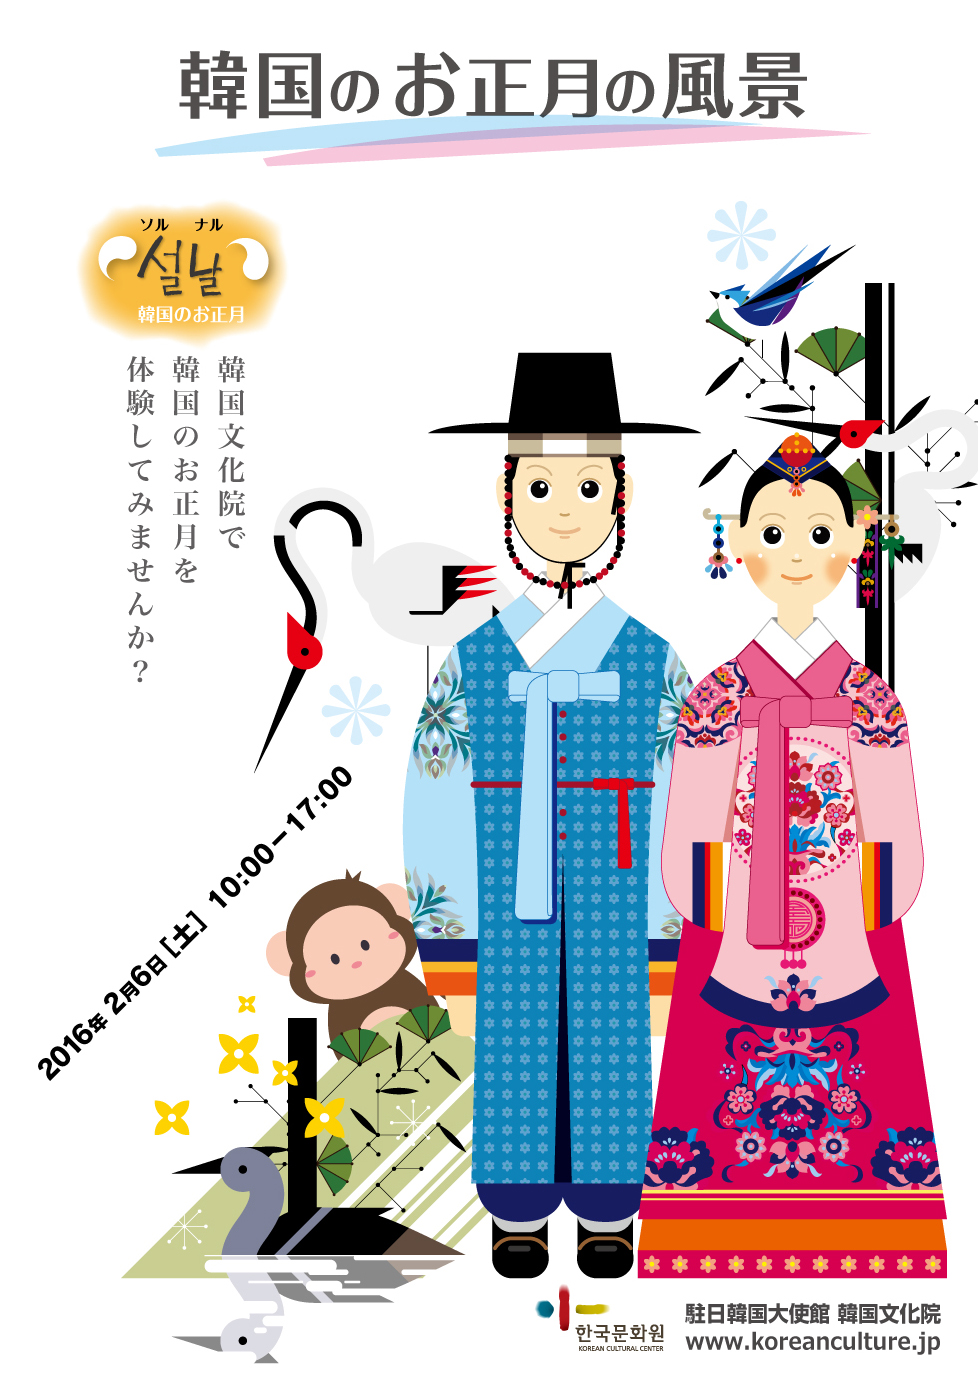 韓国のお正月の風景 16 韓国のお正月を体験してみませんか イベントカレンダー 新大久保ホットガイド